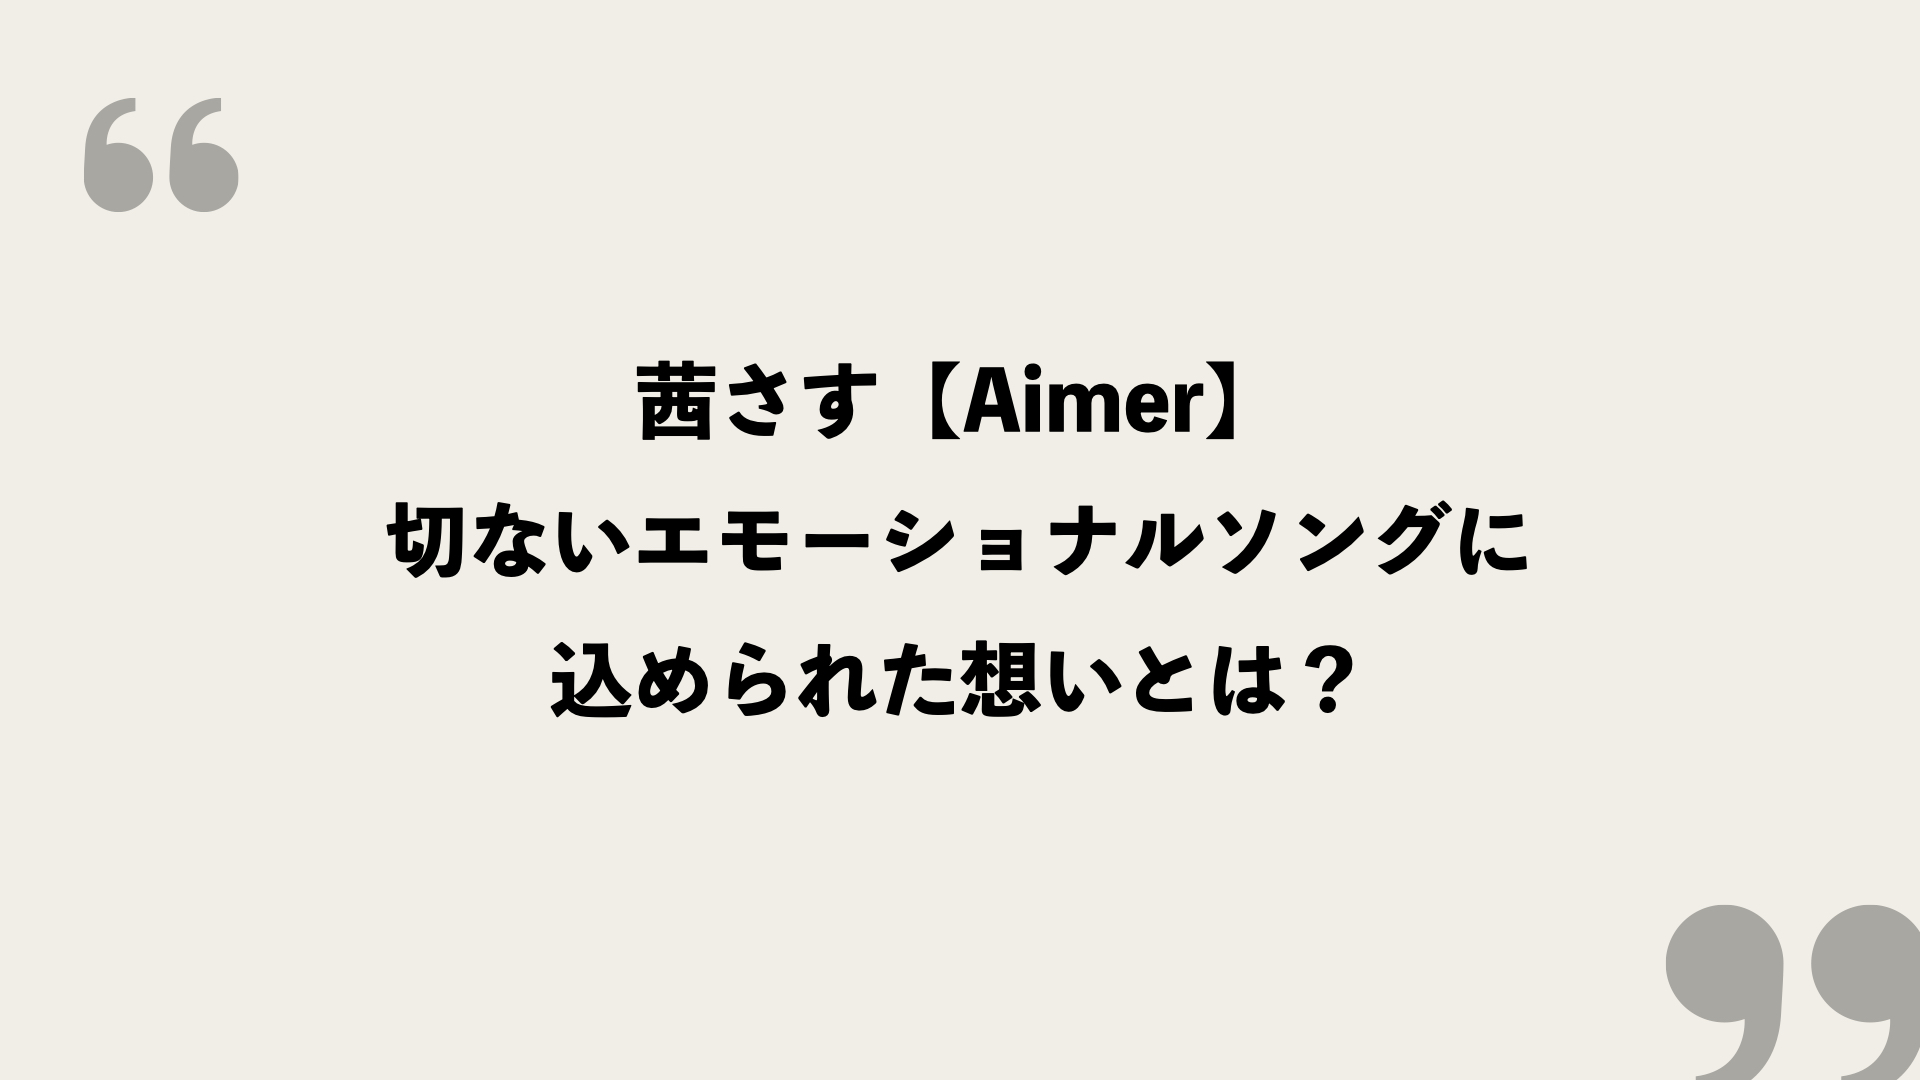 茜さす Aimer の歌詞を考察 切ないエモーショナルソングに込められた想いとは Framu Media